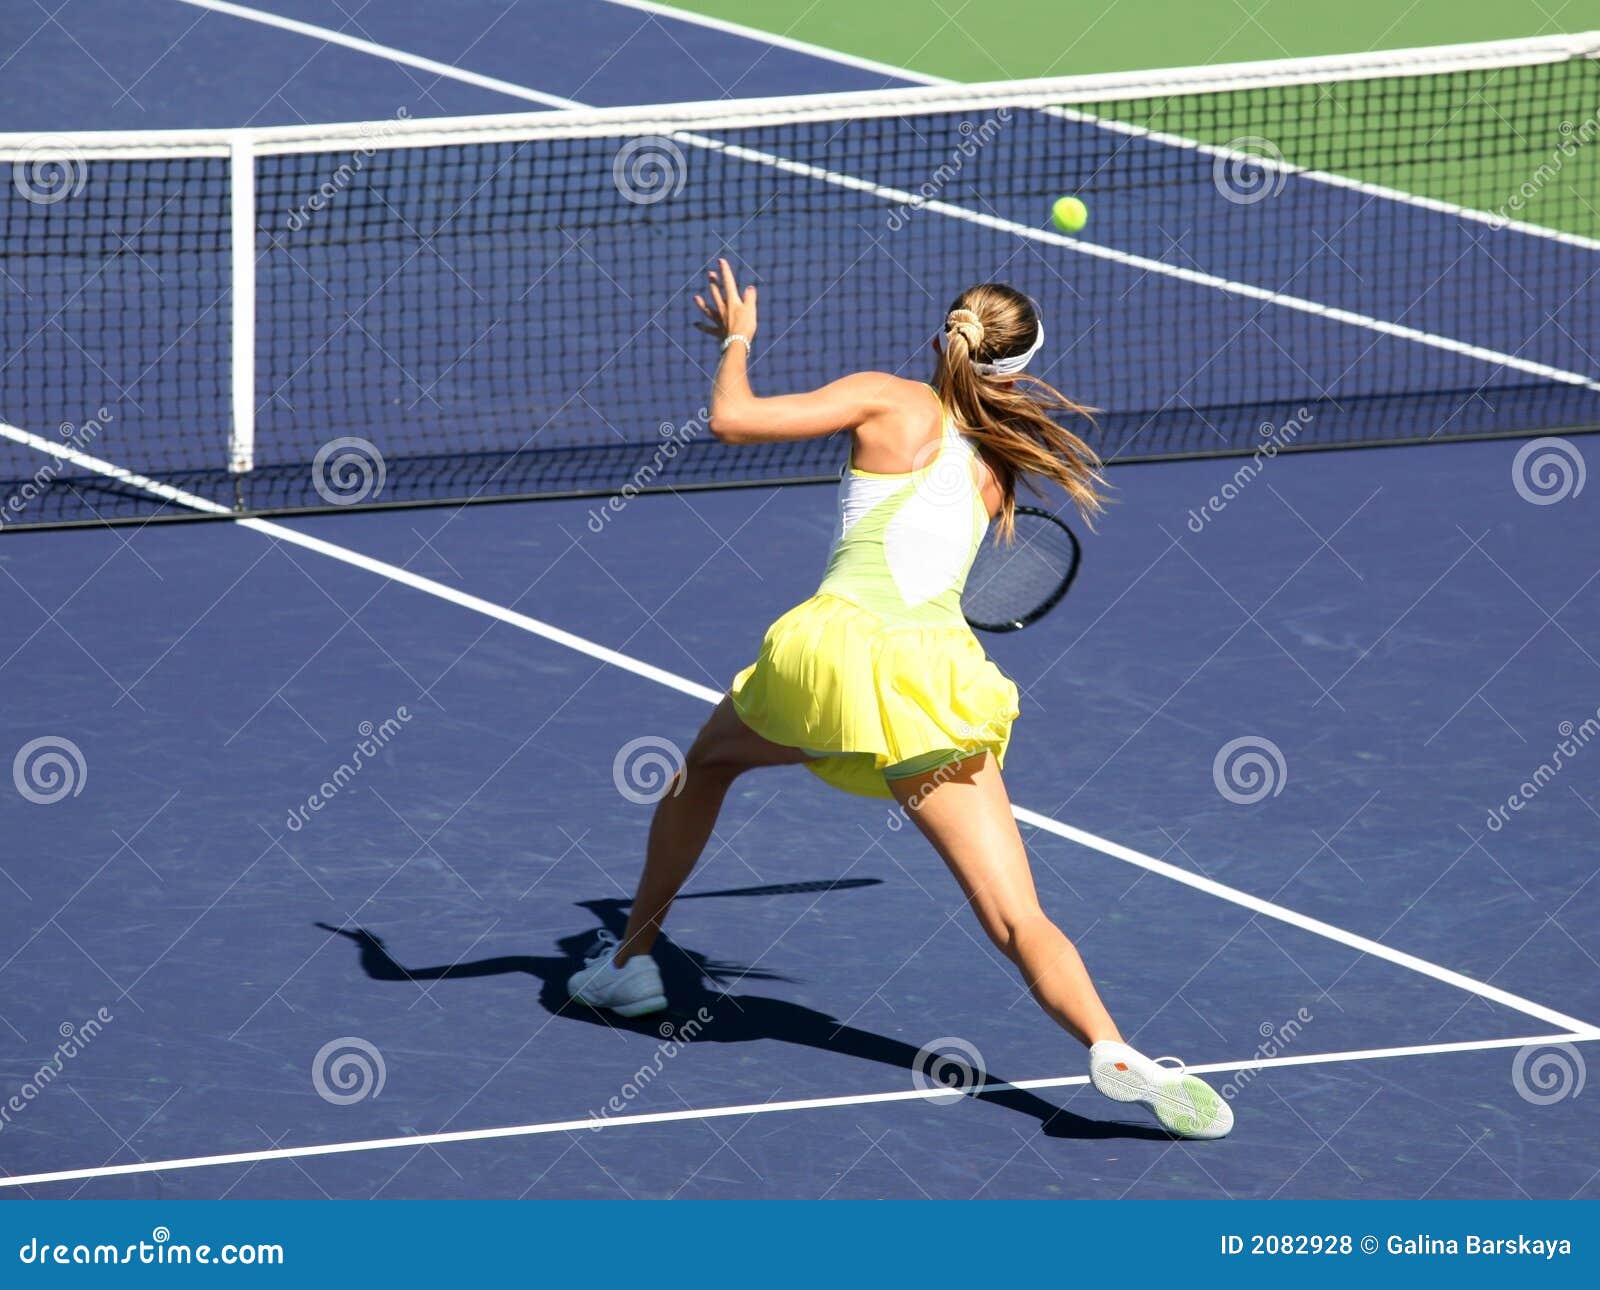 woman tennis